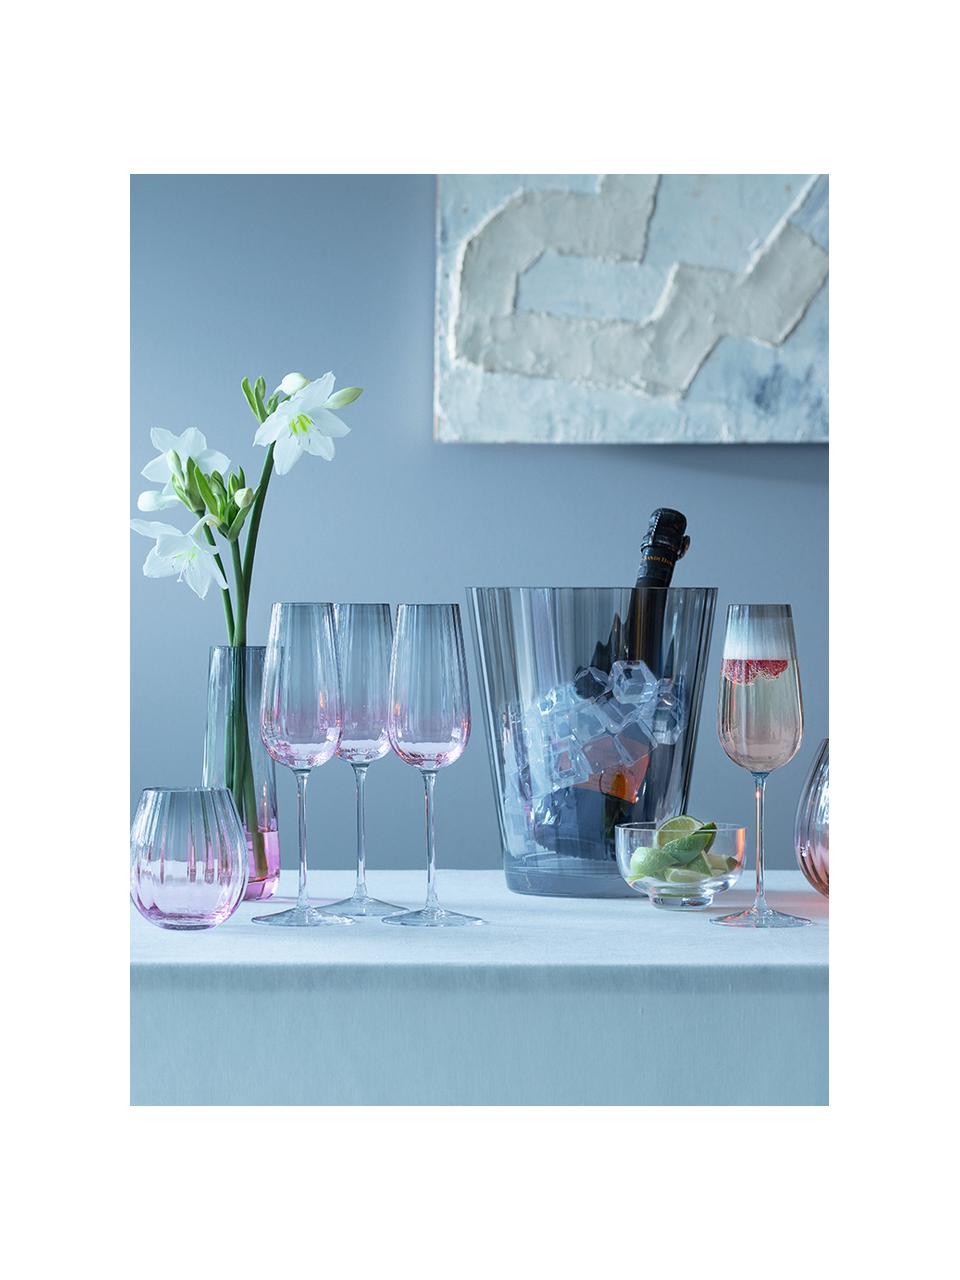 Handgemachte Sektgläser Dusk mit Farbverlauf, 2 Stück, Glas, Rosa, Grau, Ø 6 x H 23 cm, 250 ml